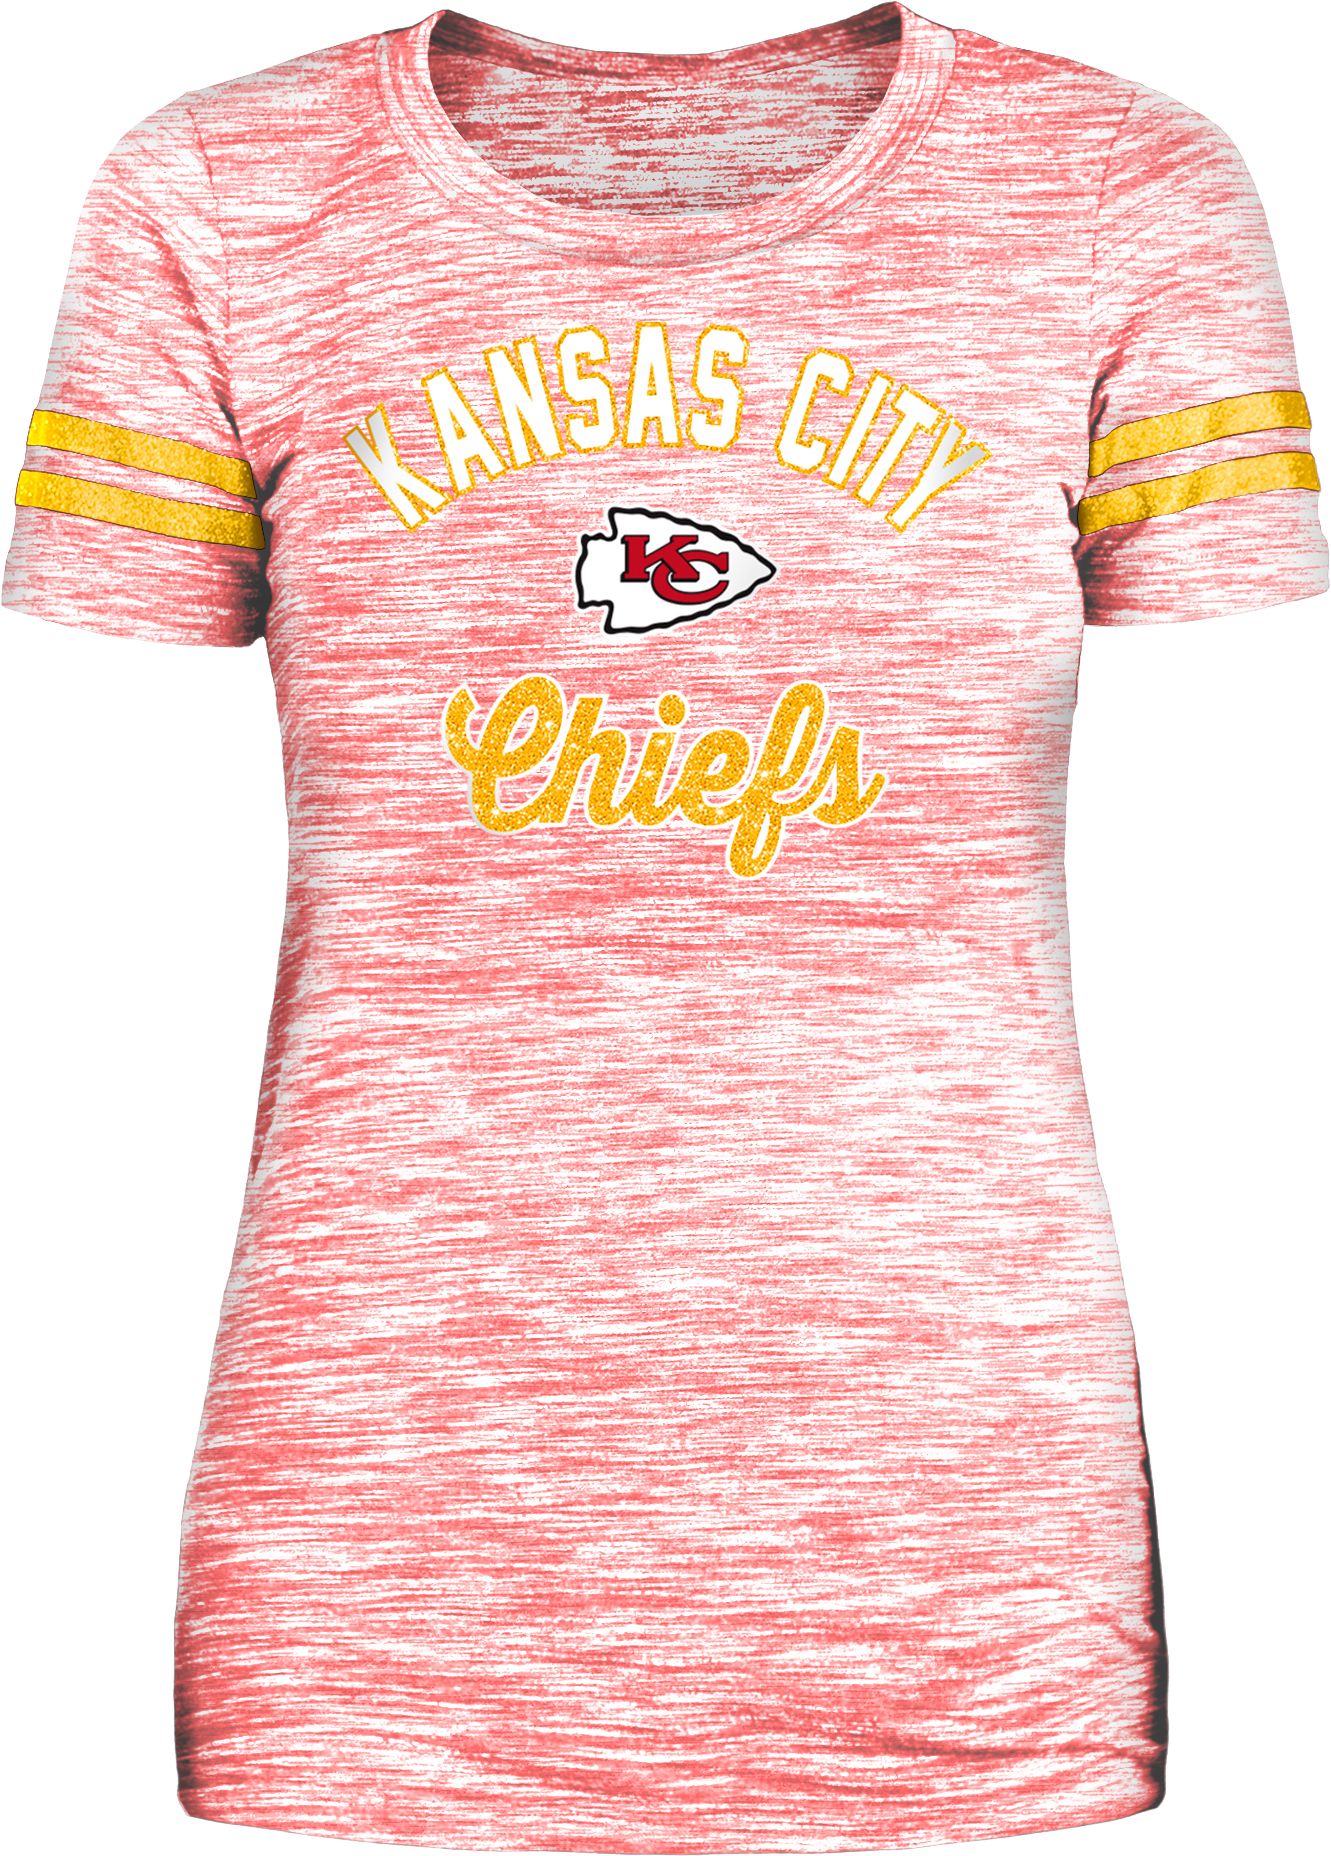 New Era / Women's Kansas City Chiefs Space Dye Glitter T-Shirt